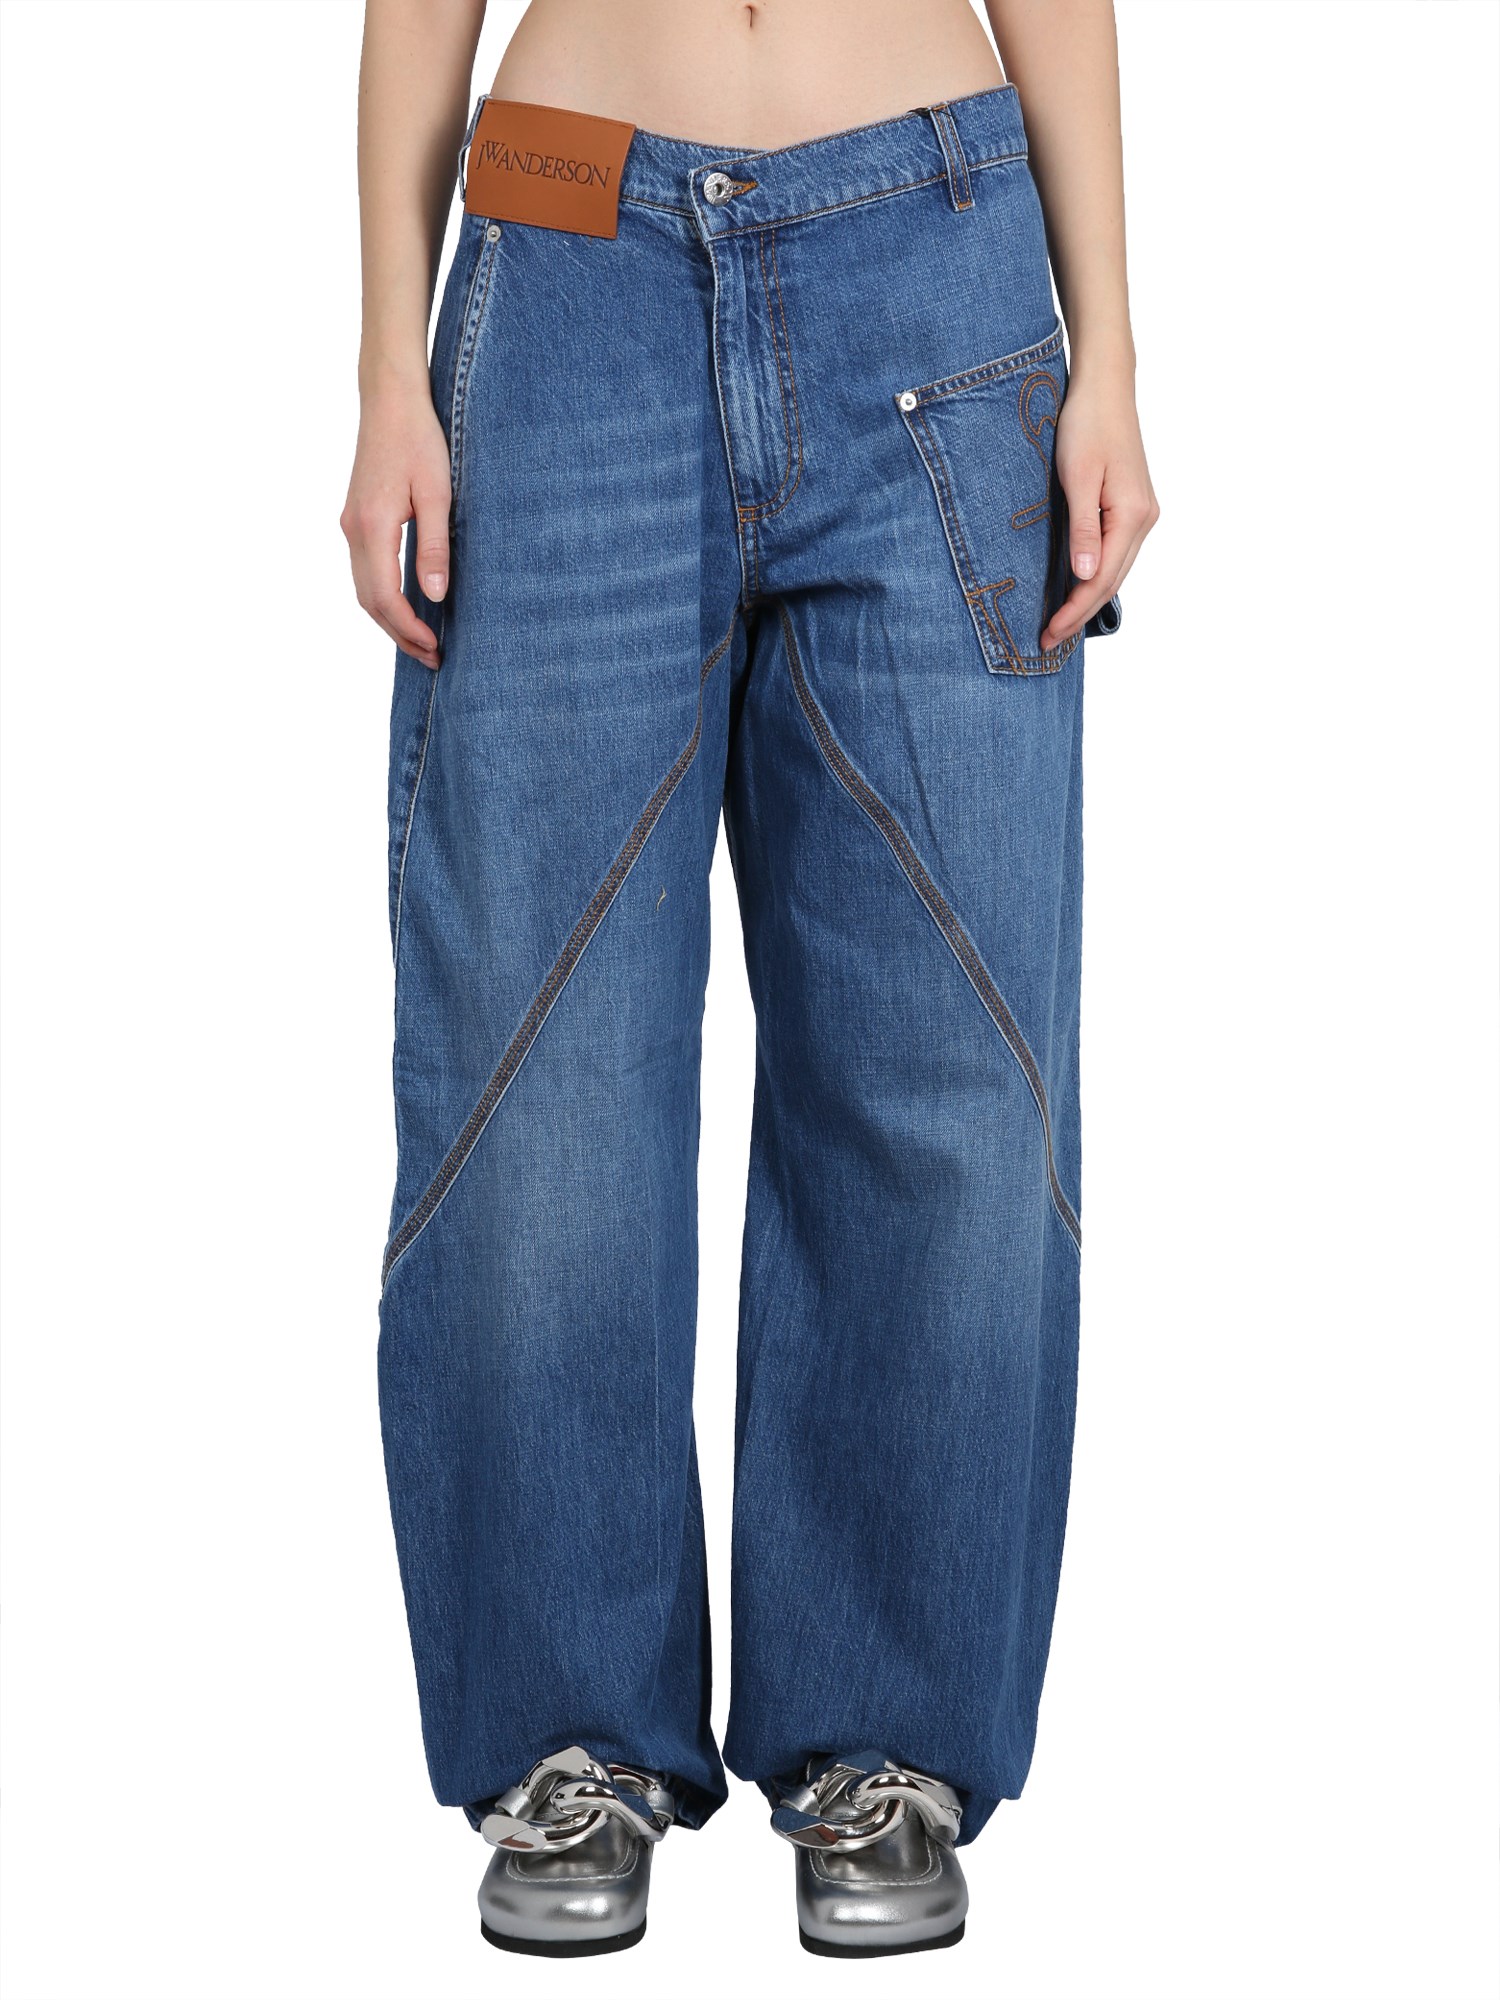 jw anderson twisted workwear jeans